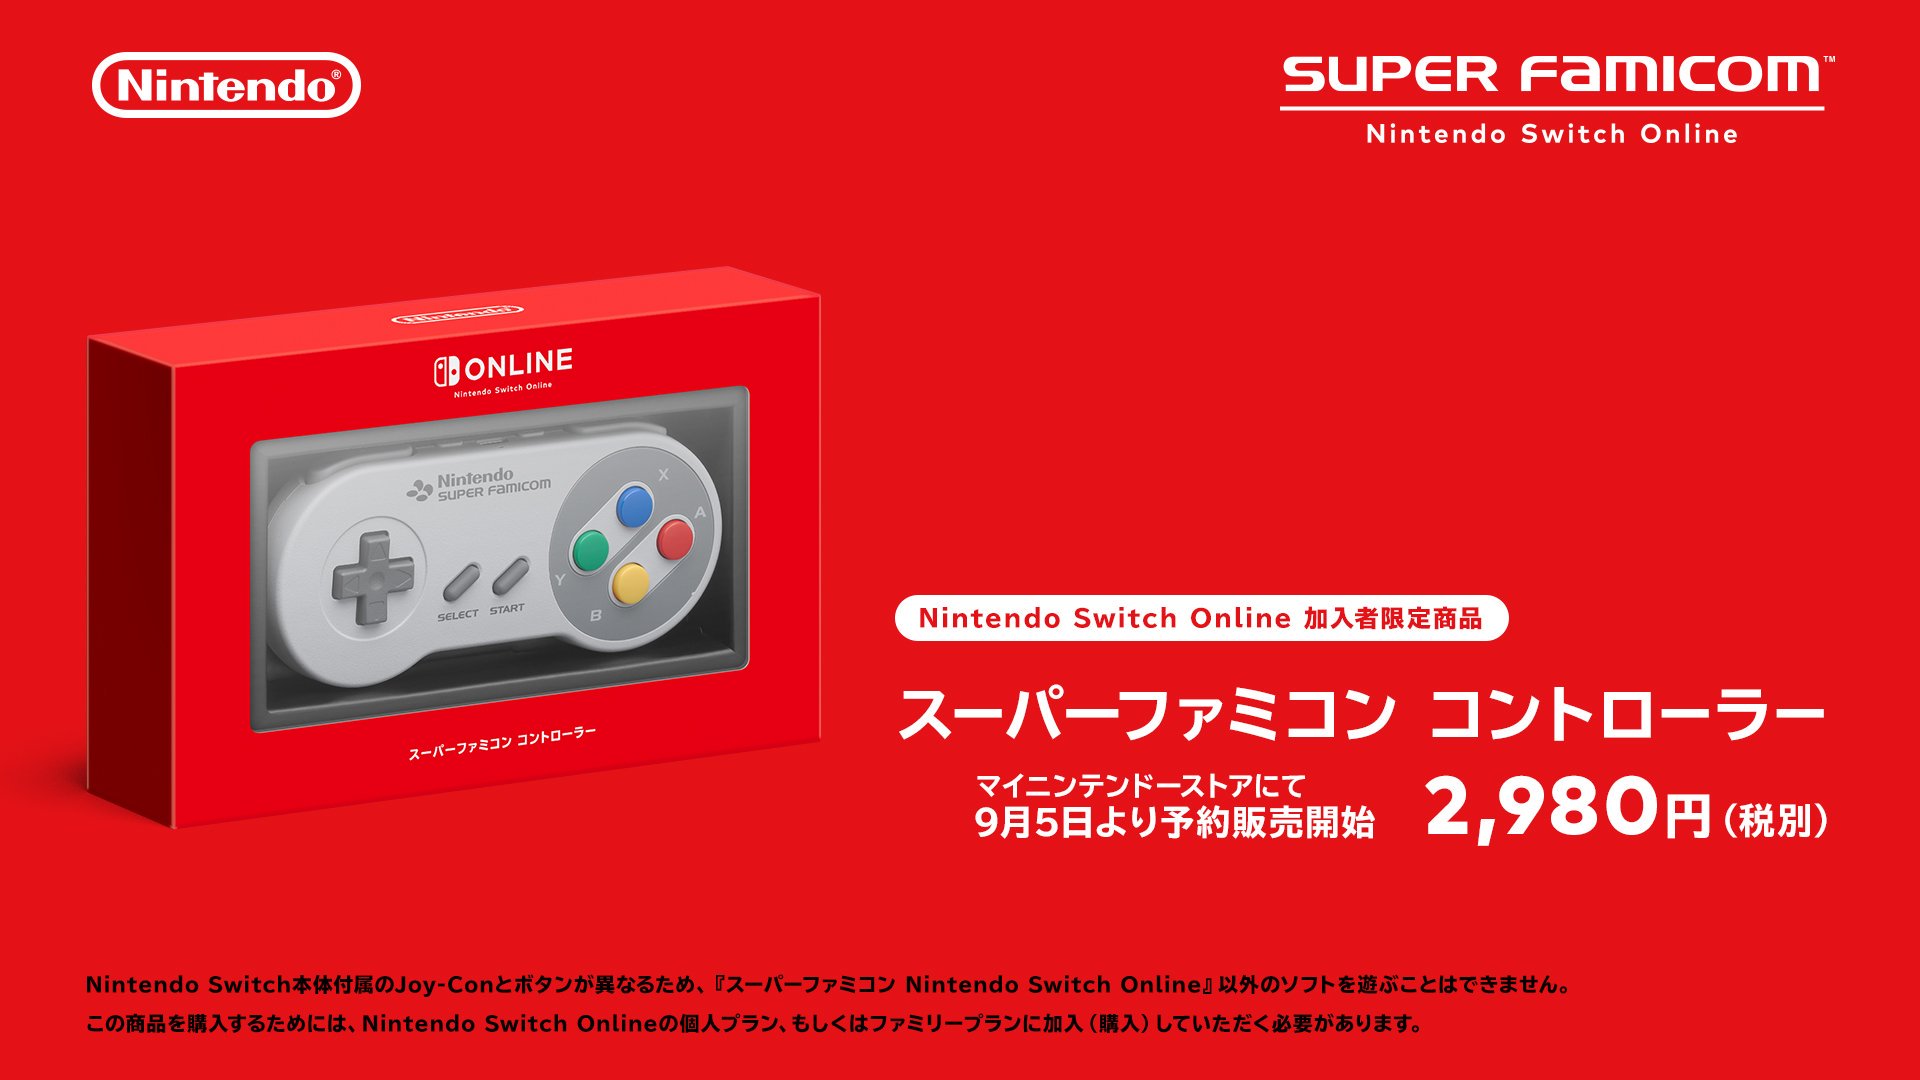 任天堂、マリオカートなど20タイトルを収録した｢スーパーファミコン Nintendo Switch Online｣を明日から配信開始へ − スーファミ型コントローラーも発売